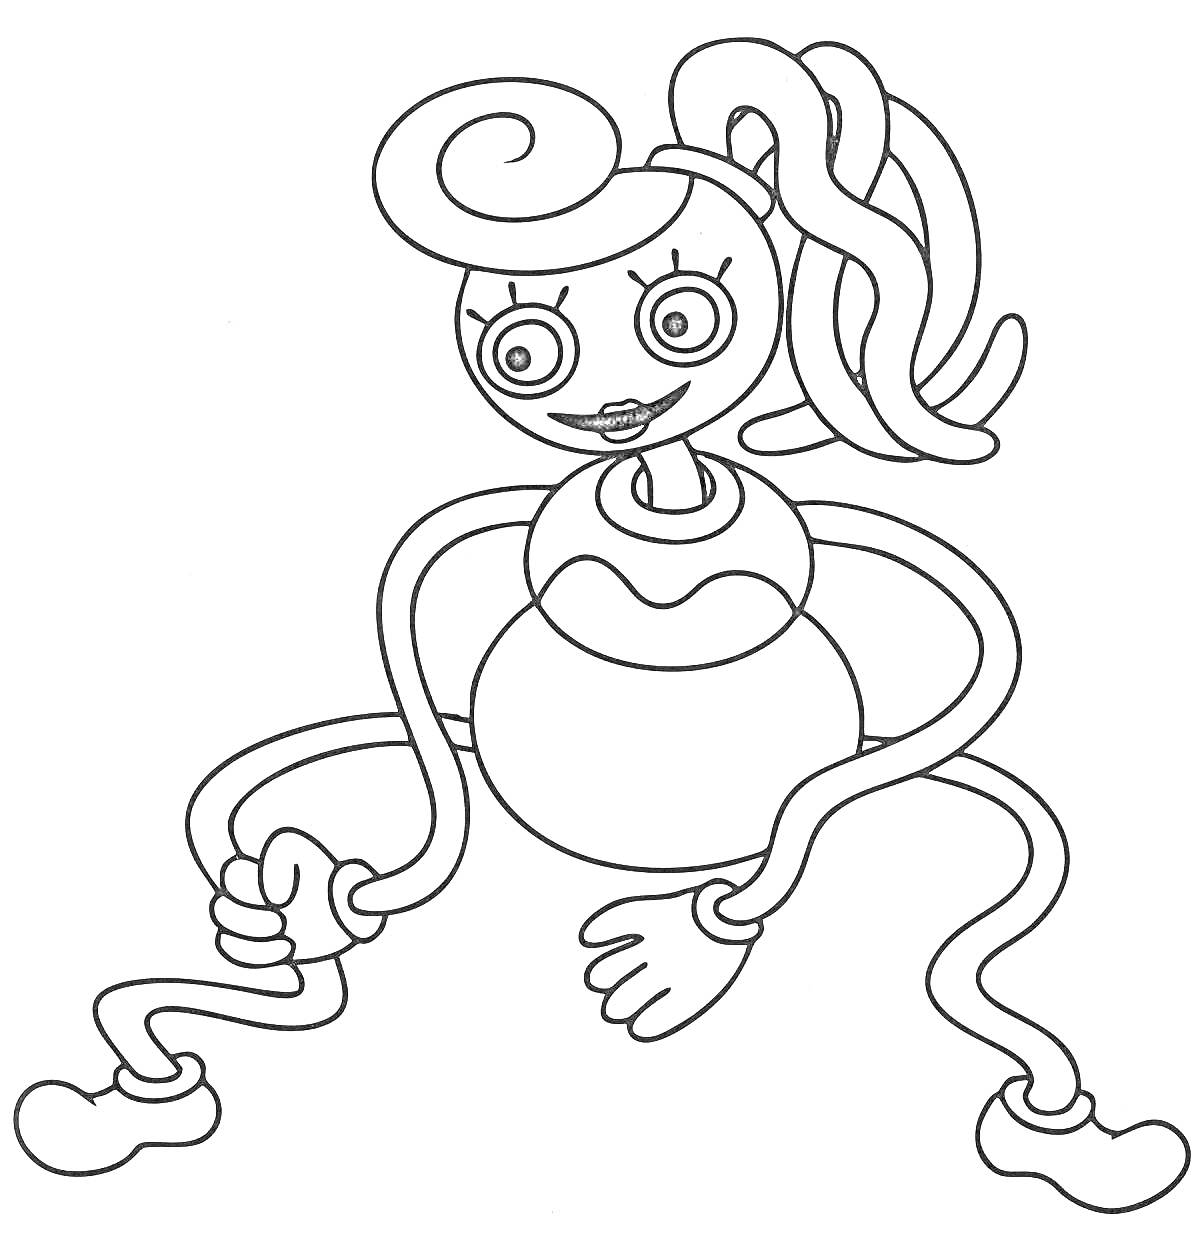 Раскраска Мама длинноногая с пучком волос, большими глазами и длинными руками и ногами в мультяшном стиле